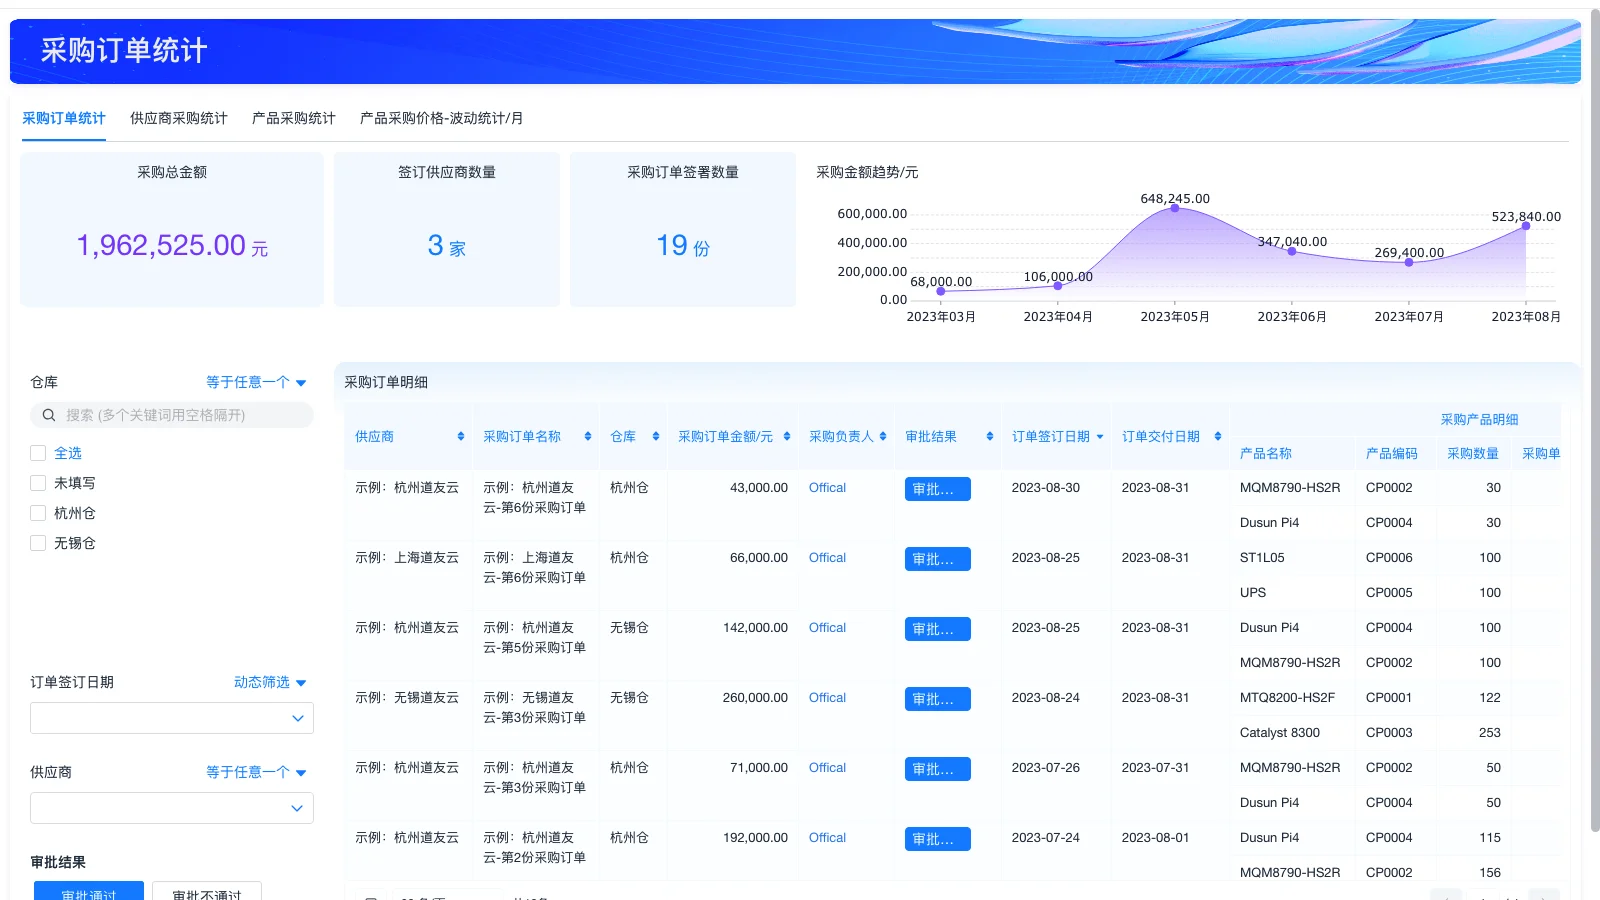 上海生活缴费软件生产商